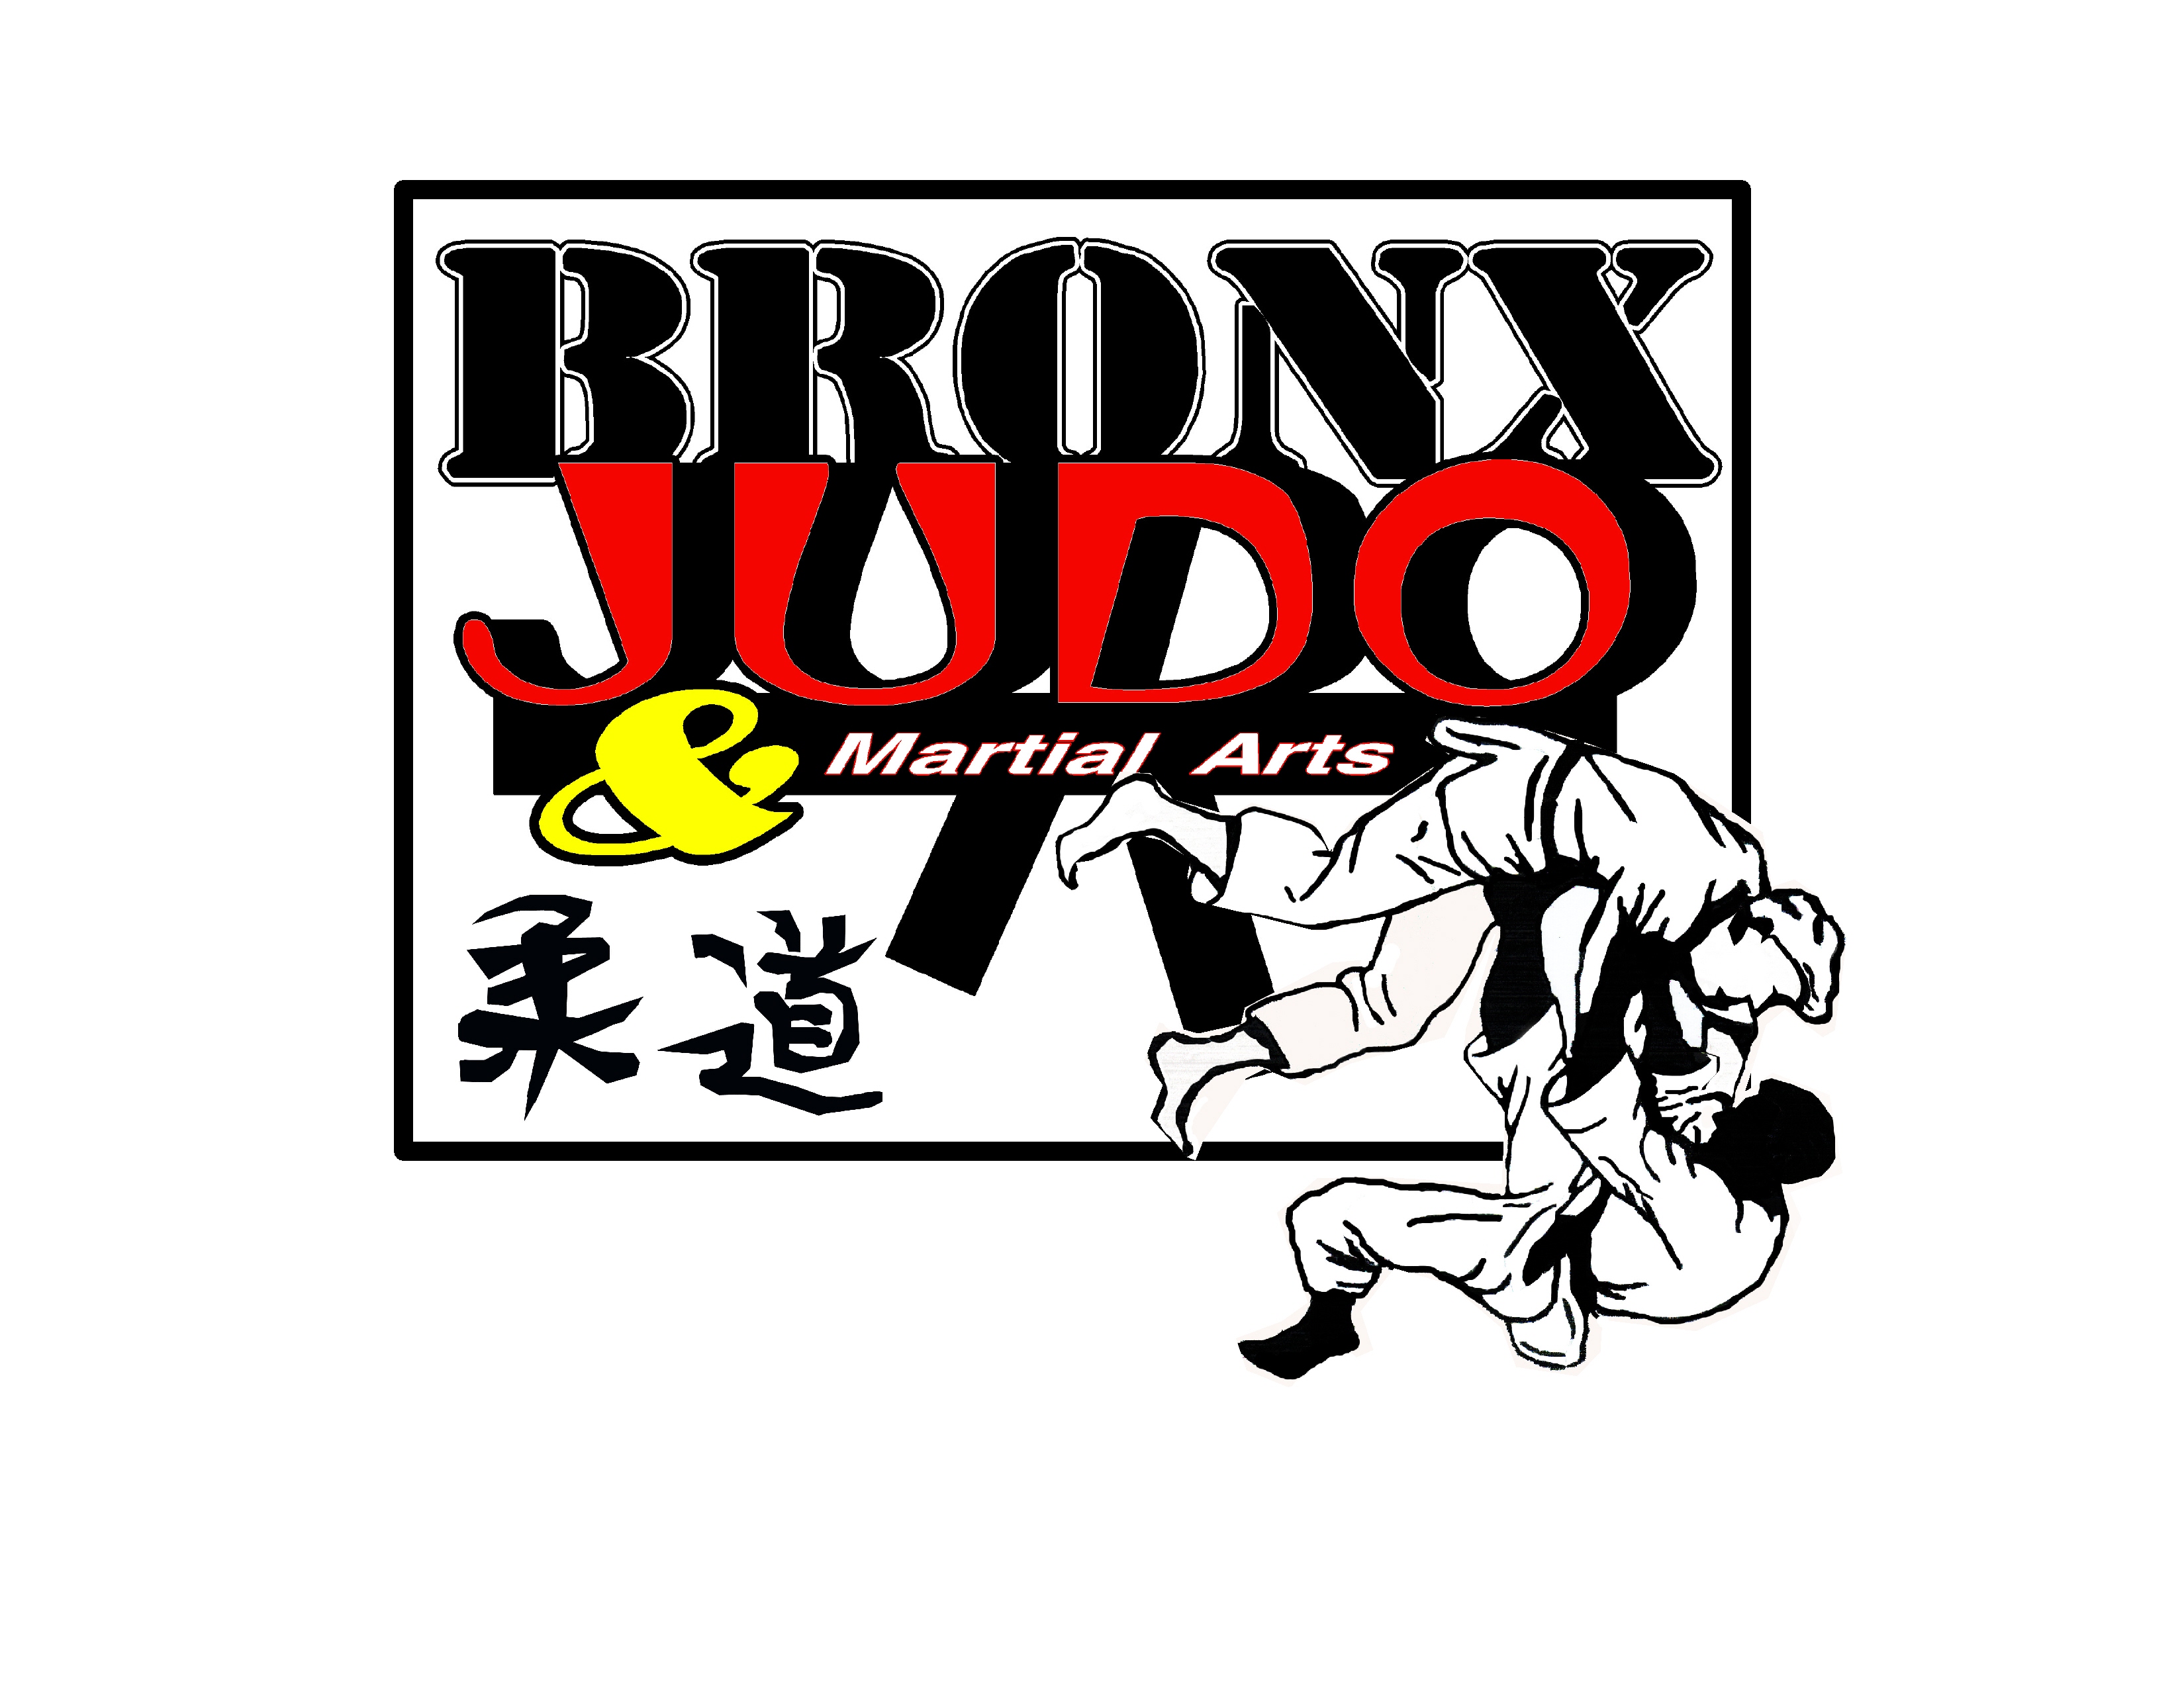 Bronx Judo and Martial Arts Inc.